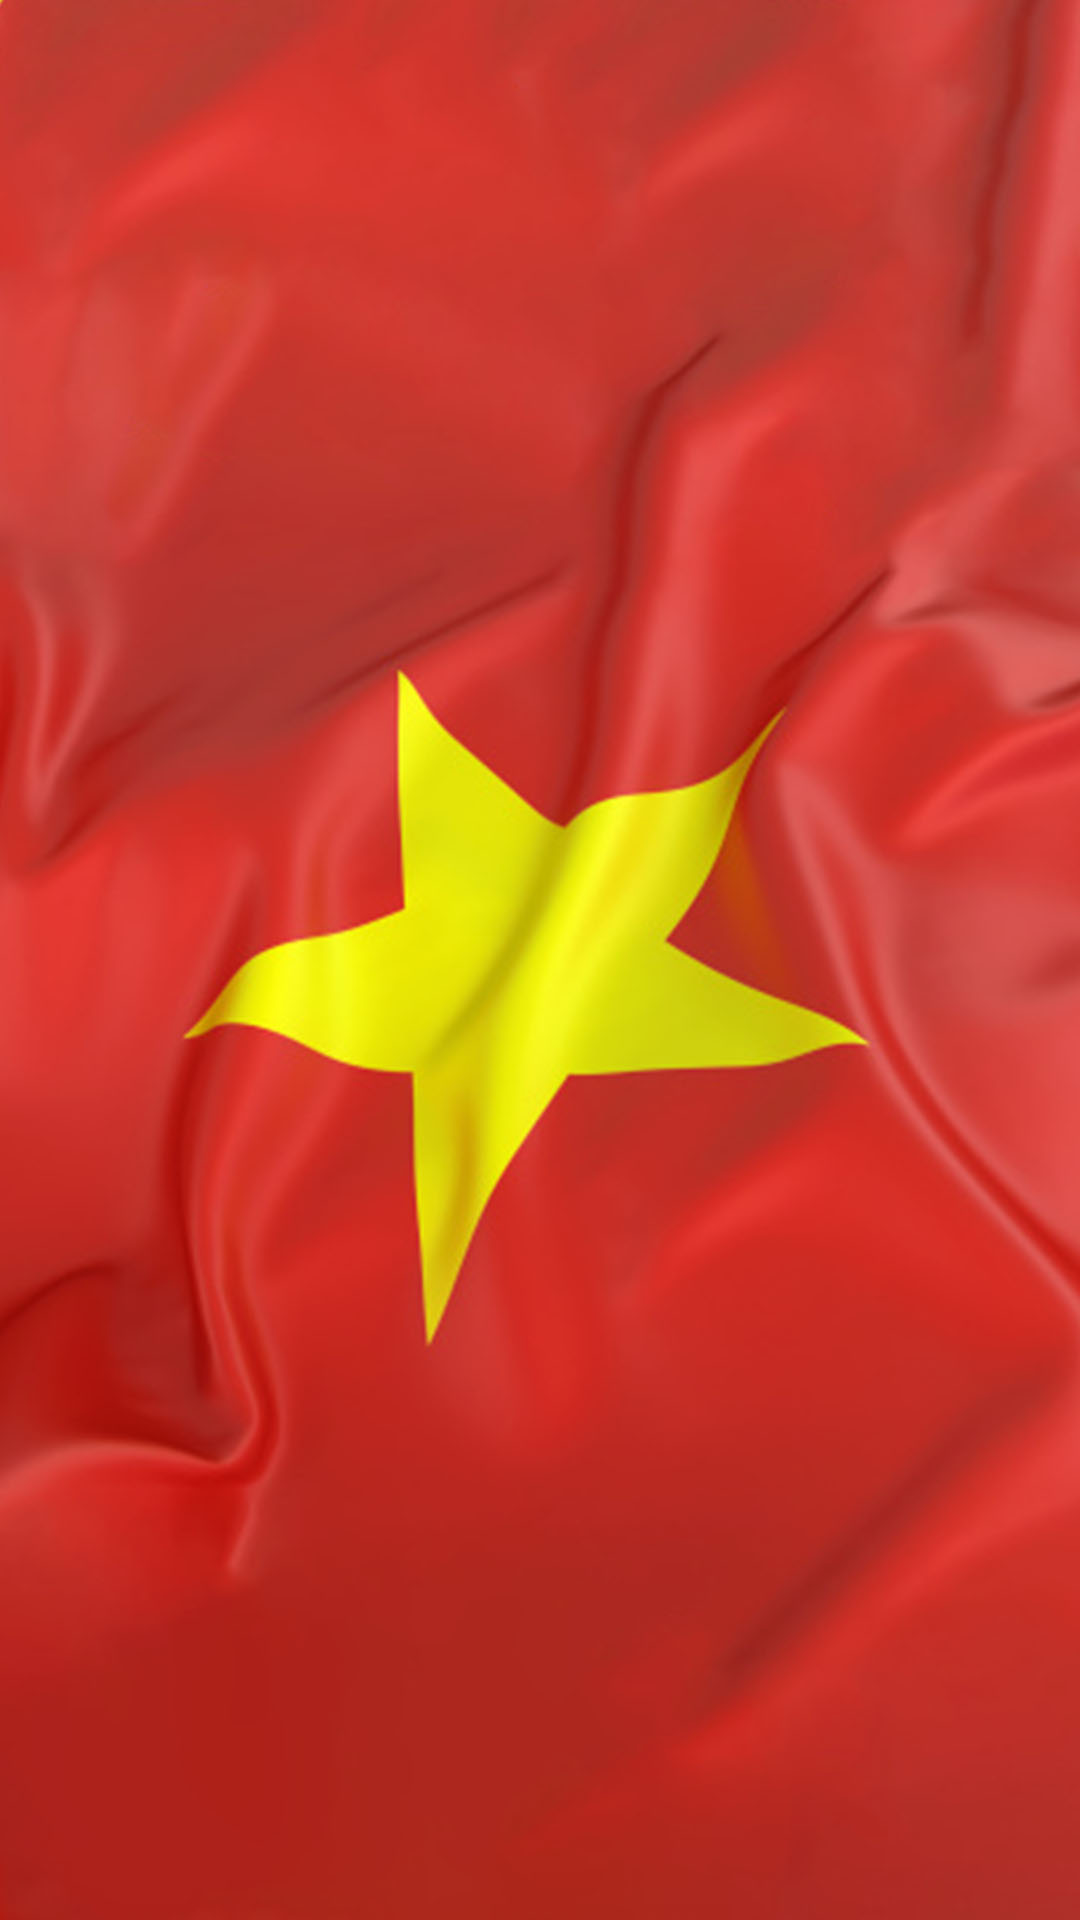 Với ảnh nền quốc kỳ Việt Nam 2024, bạn sẽ nhận thấy sự tự hào và tinh thần yêu nước tràn đầy. Hình ảnh này thể hiện sự tôn trọng và vinh danh cho quốc kỳ Việt Nam trong tâm hồn người dân Việt Nam. Hãy chọn ảnh nền này để thể hiện niềm tự hào của bạn với quê hương Việt Nam.